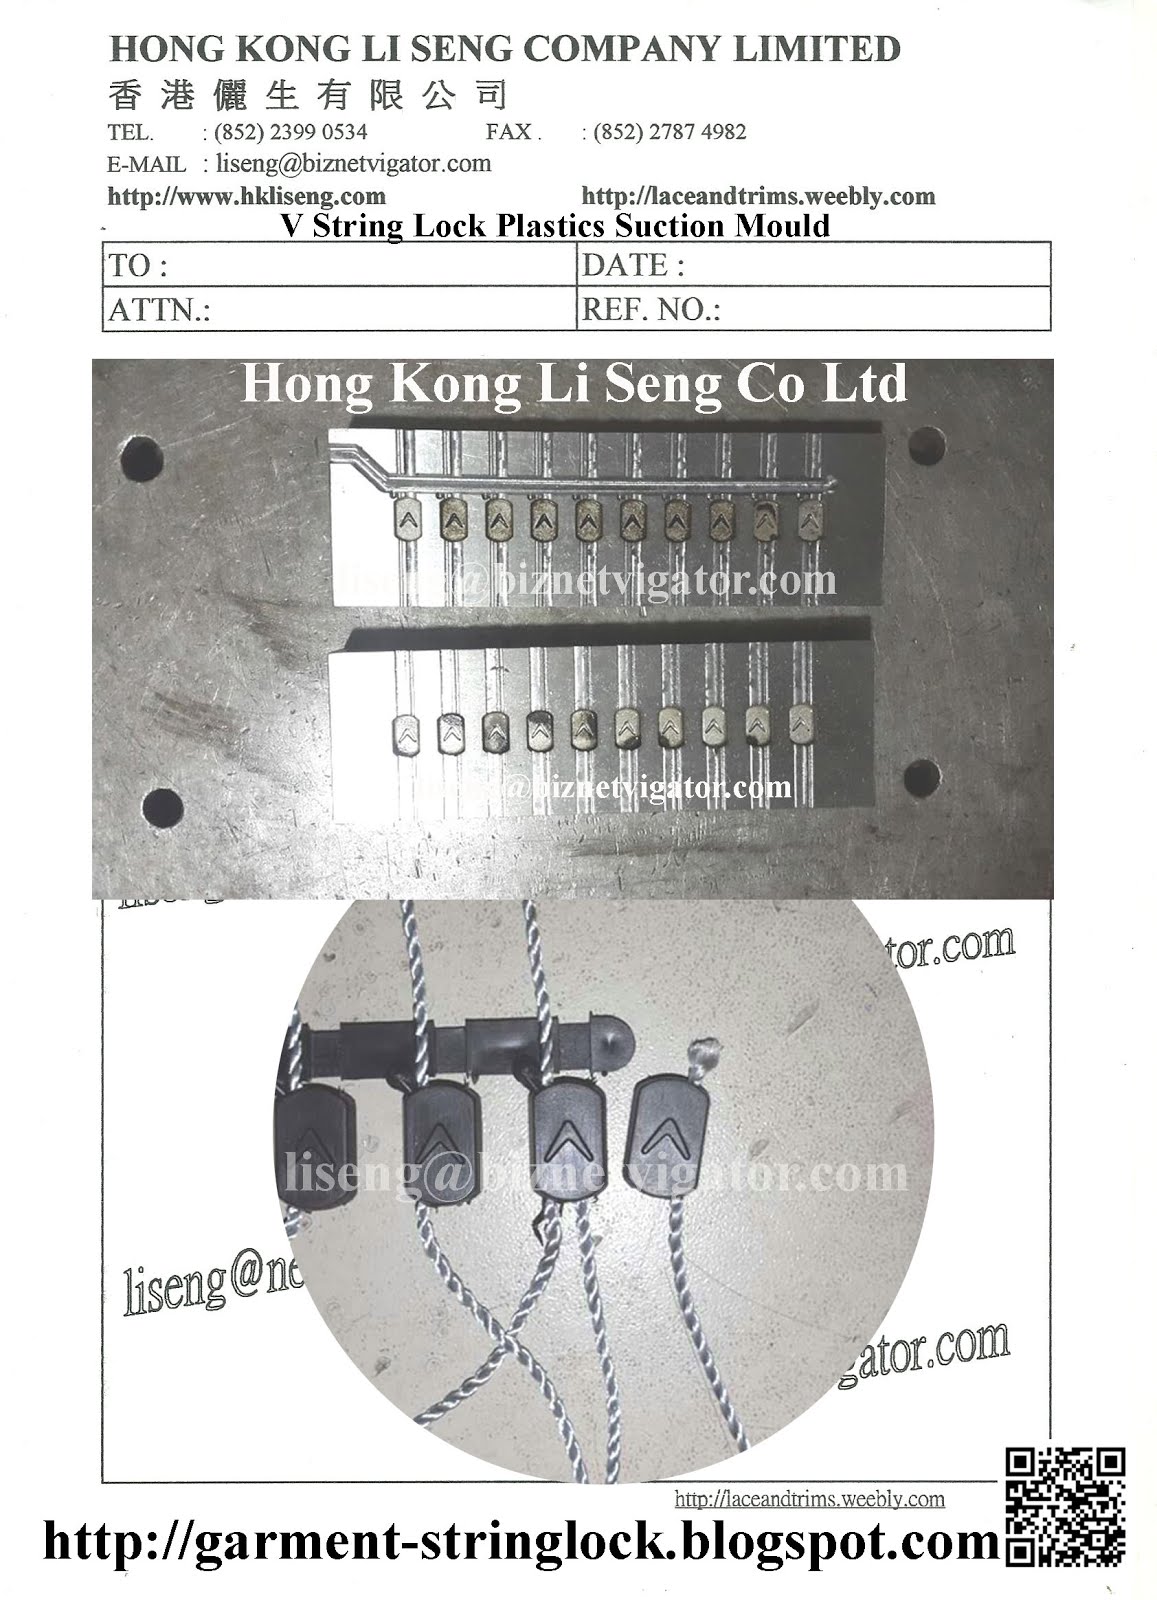 V String Lock Plastics Suction - Custom Made String Lock Mould